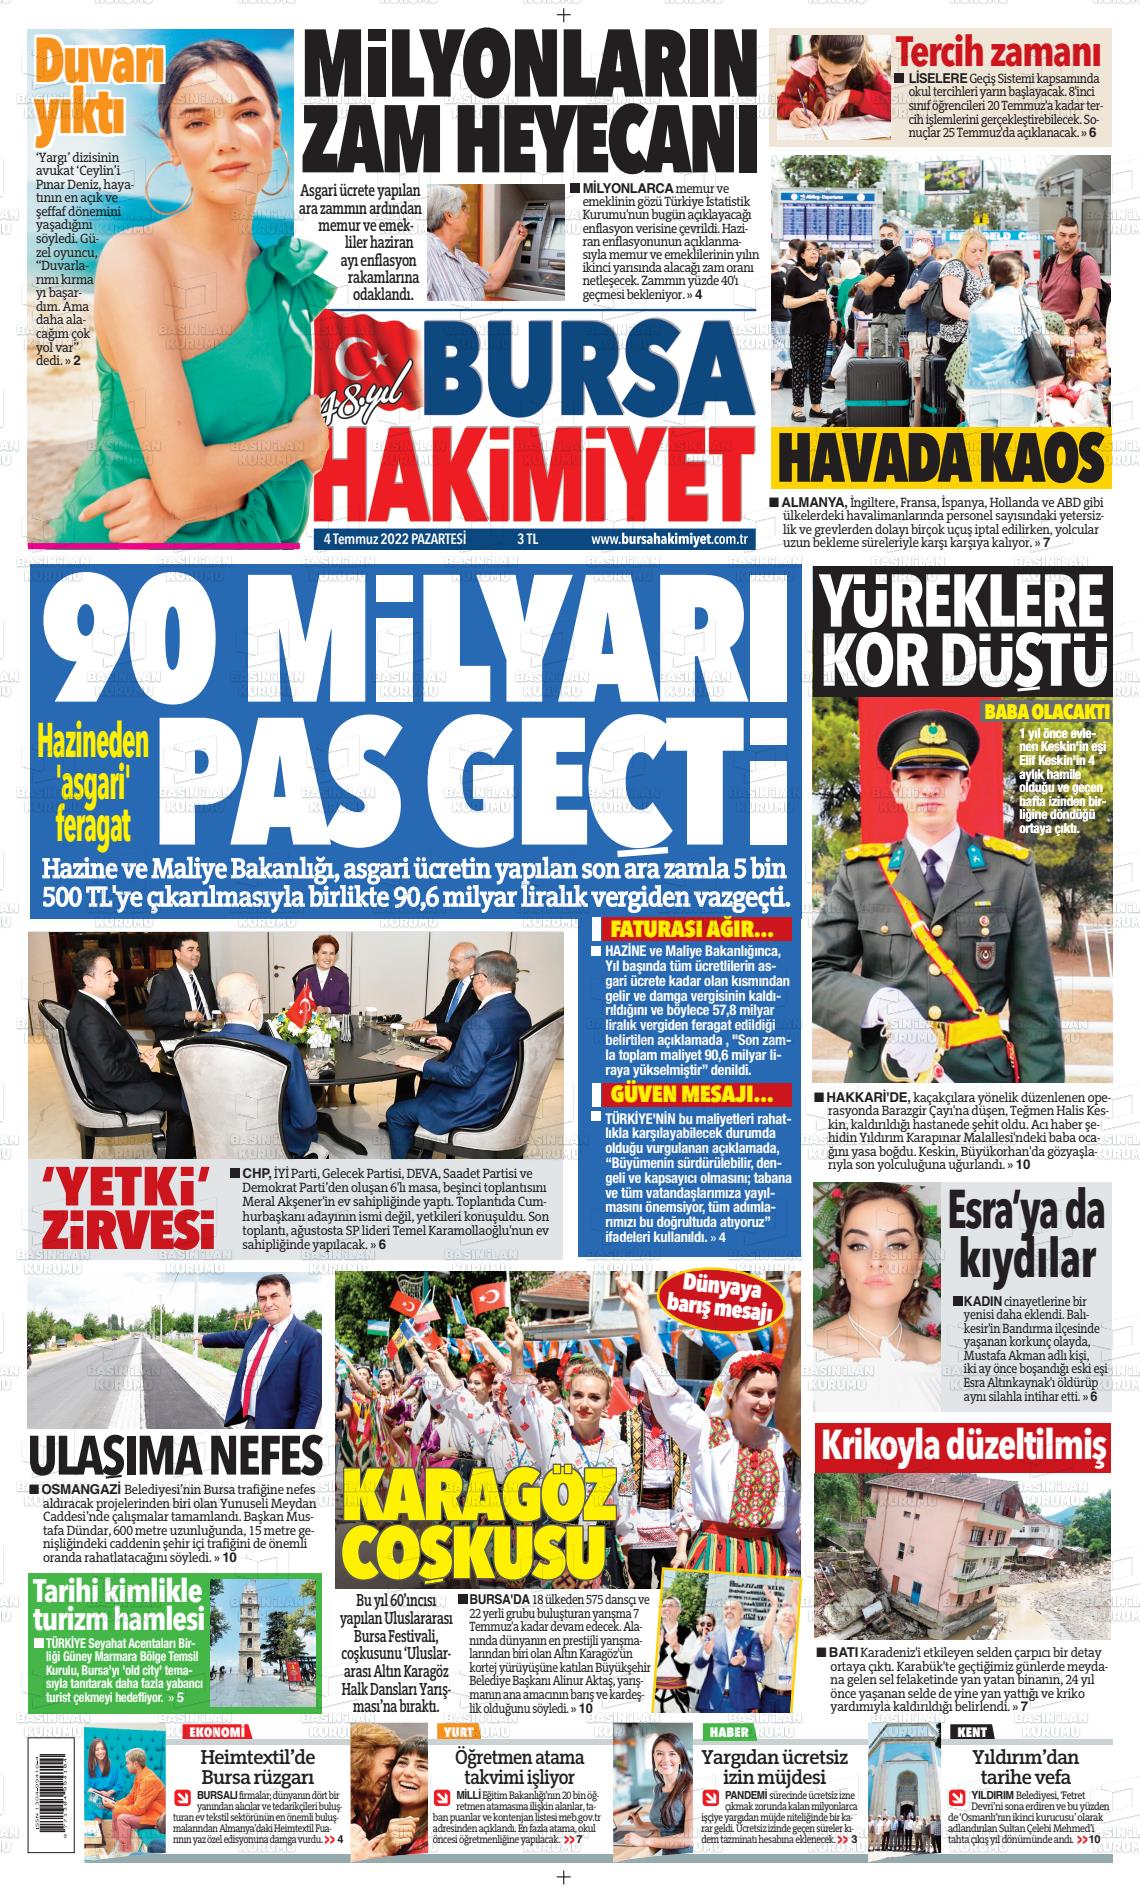 04 Temmuz 2022 Bursa Hakimiyet Gazete Manşeti